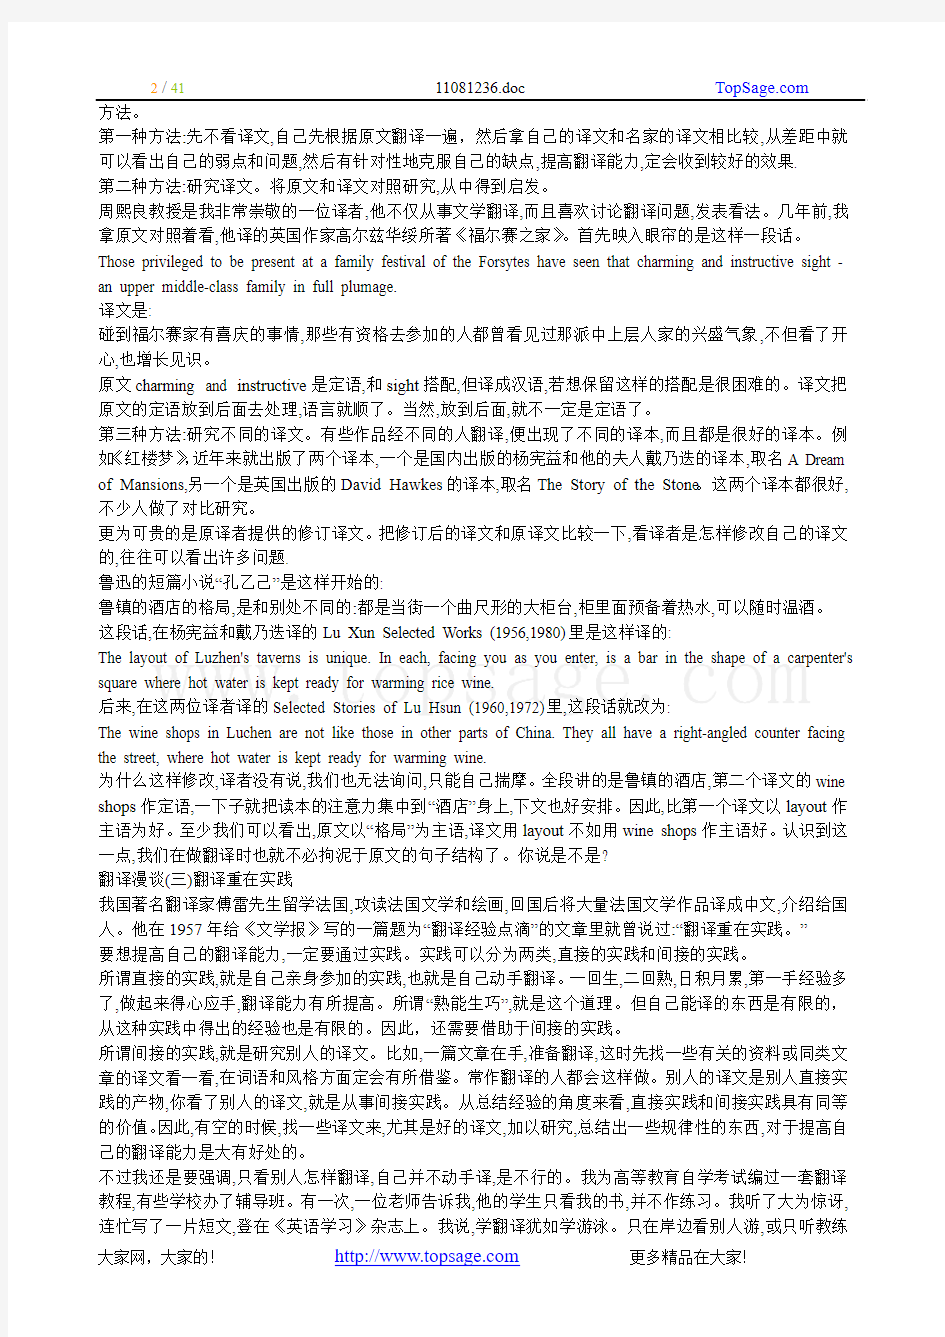 北京外国语大学教授-庄绎传(CATTI英语专家委员会顾问)漫谈翻译